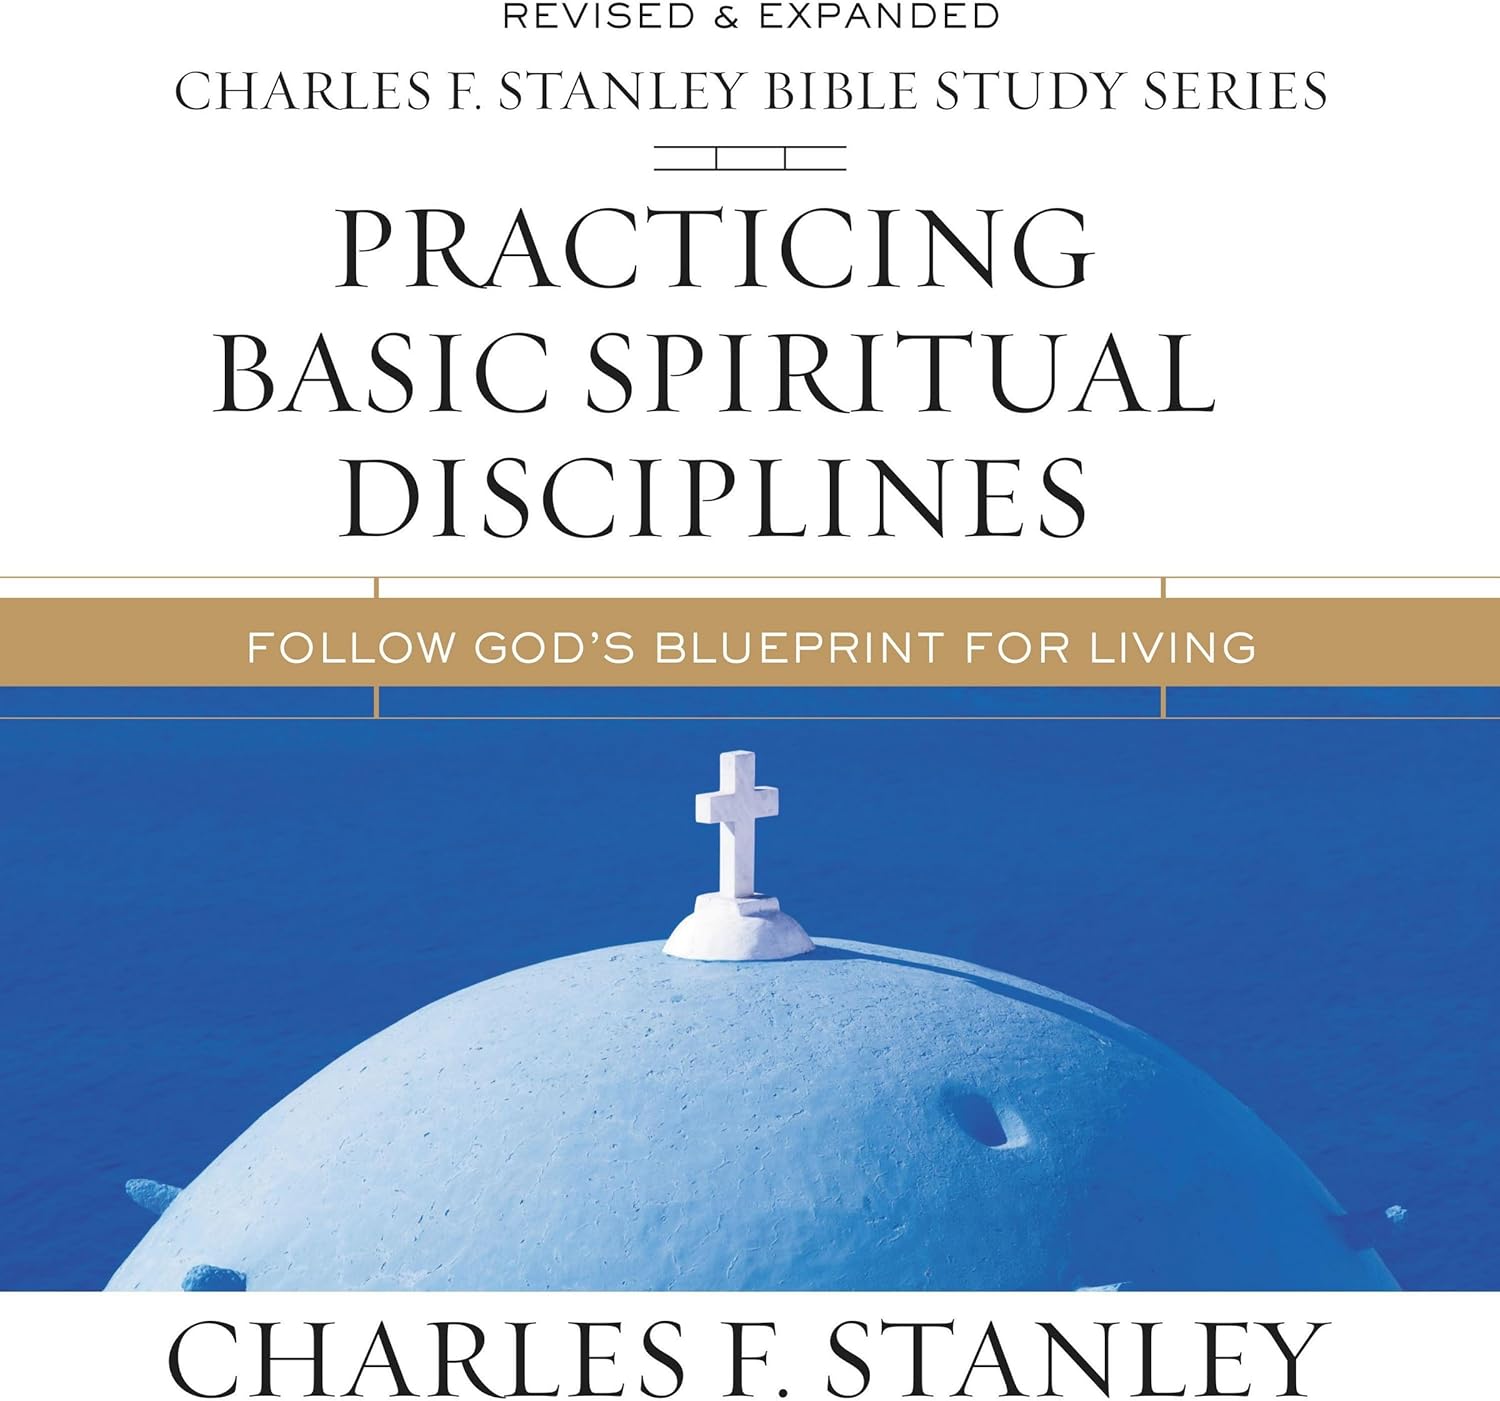 Practicing Basic Spiritual Disciplines: Audio Bible Studies: Follow Gods Blueprint for Living